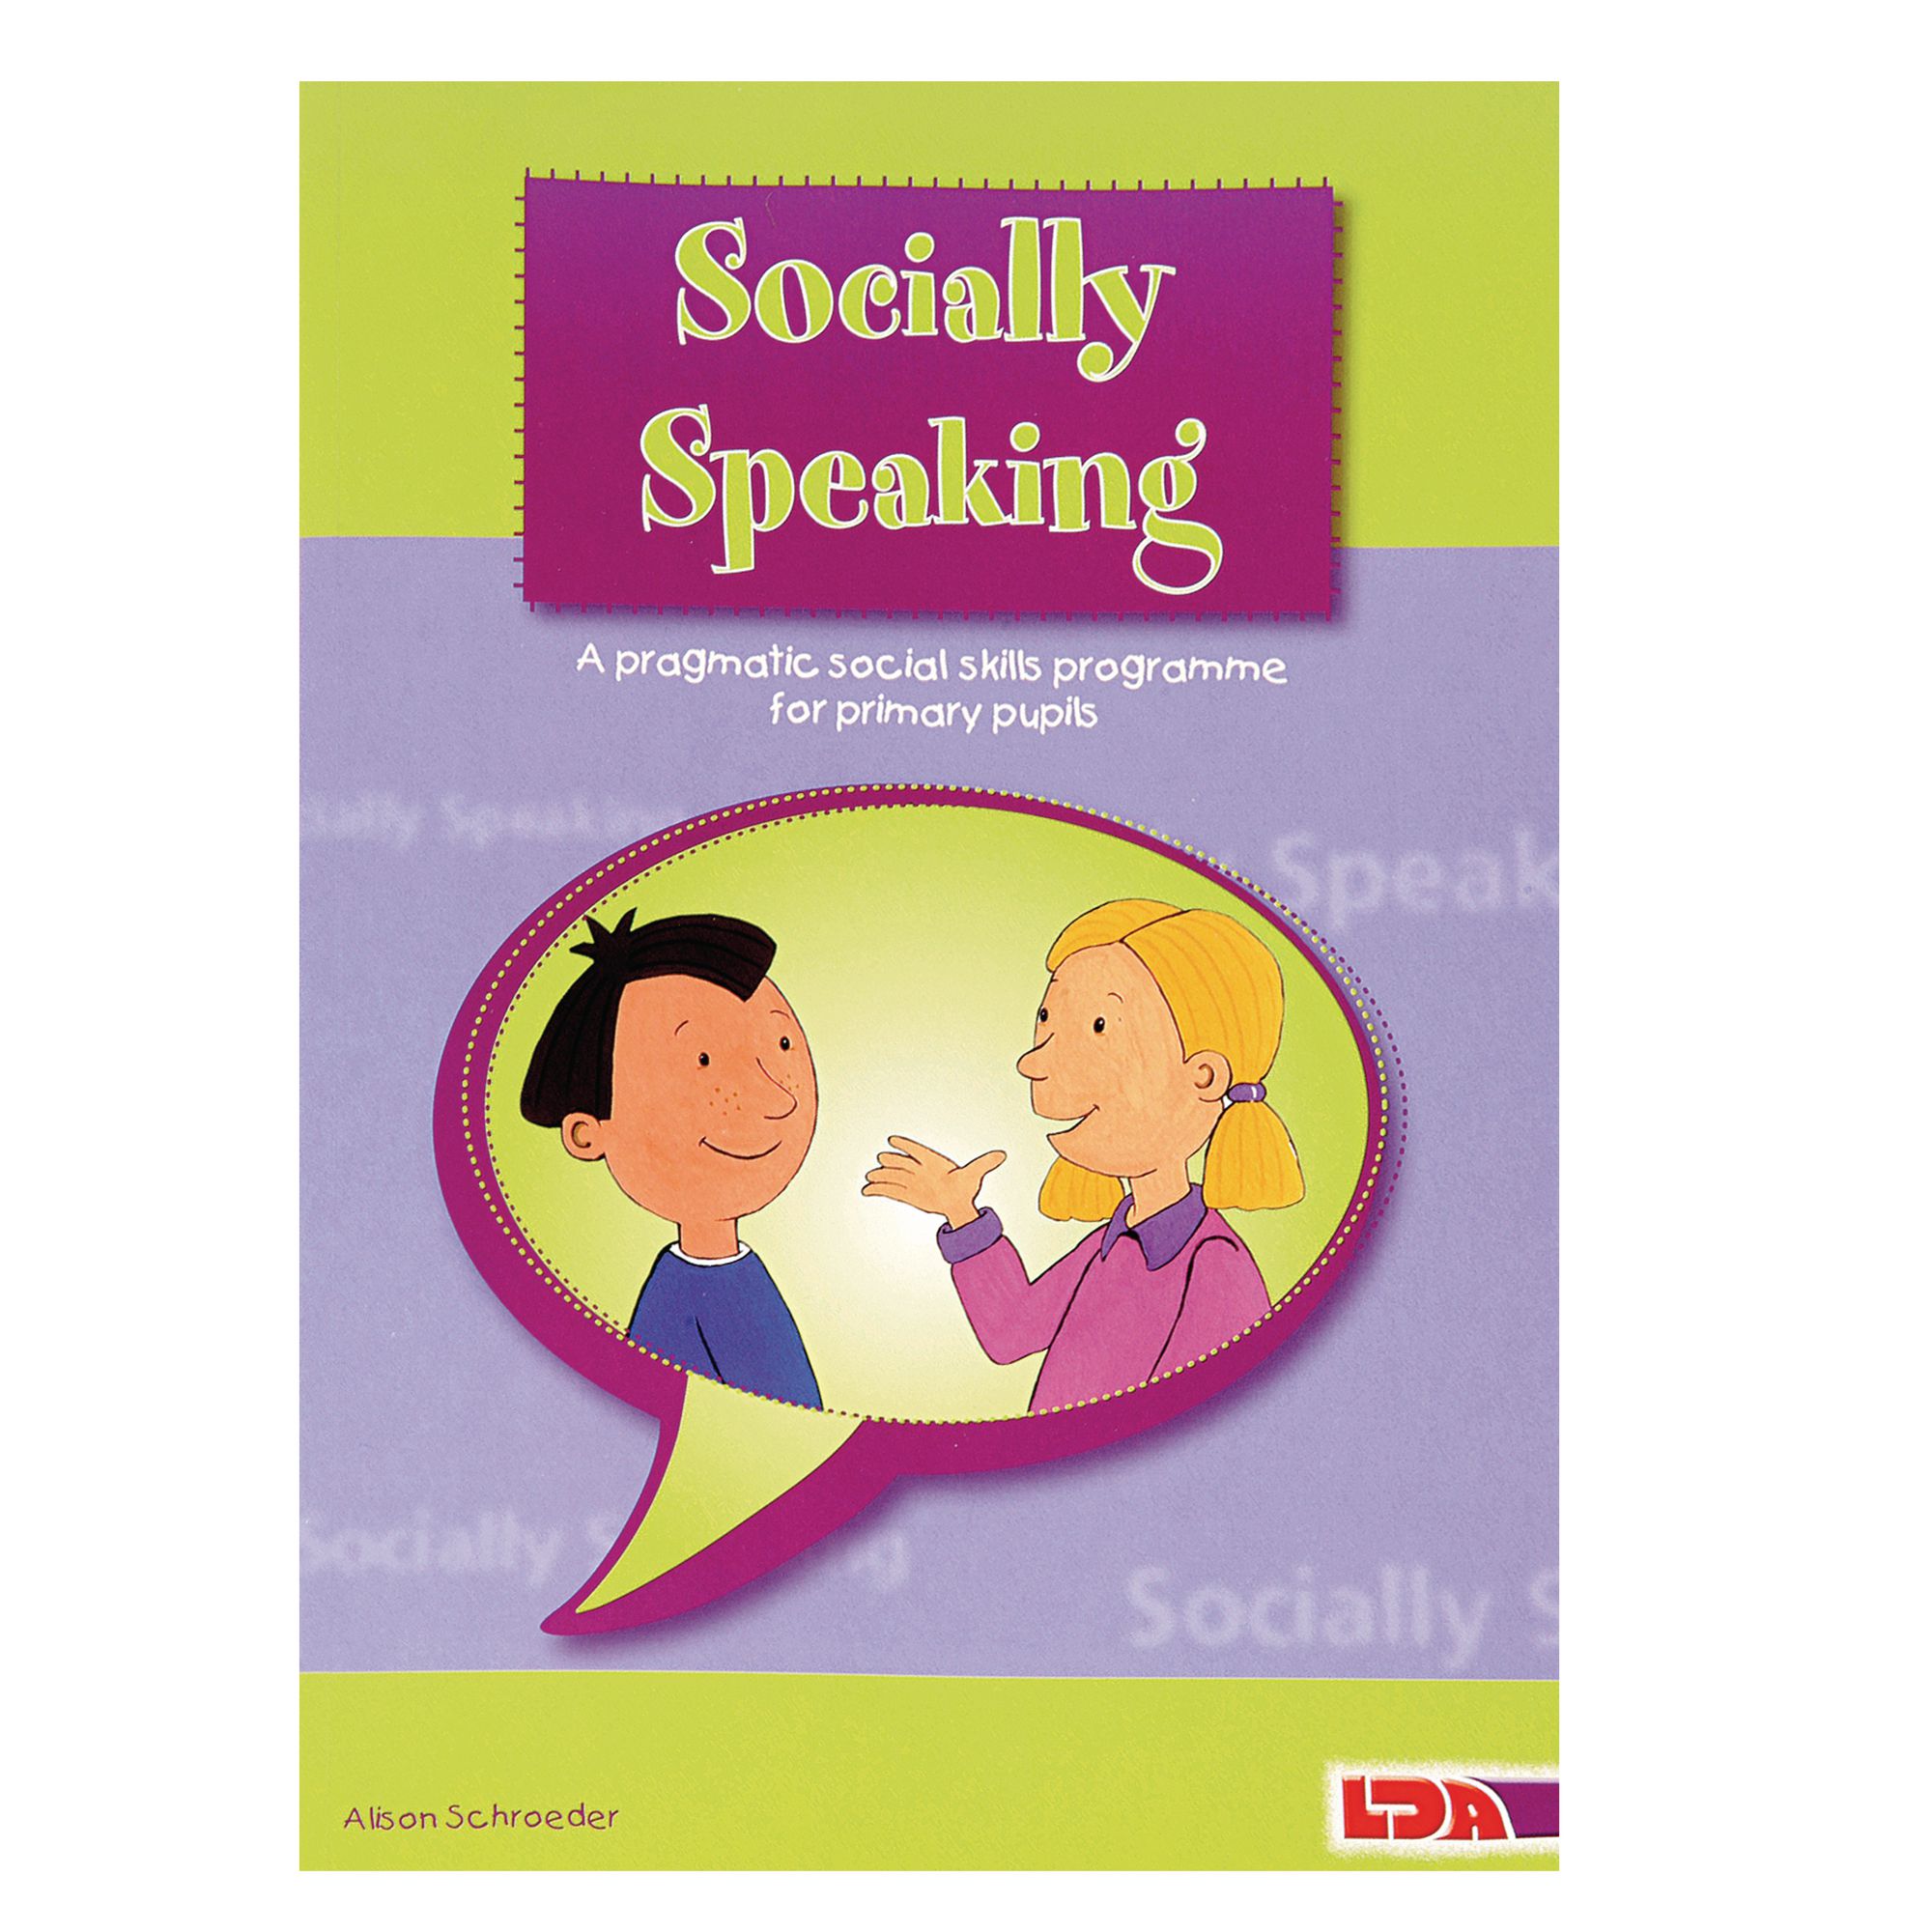 Books speaking. Social speaking